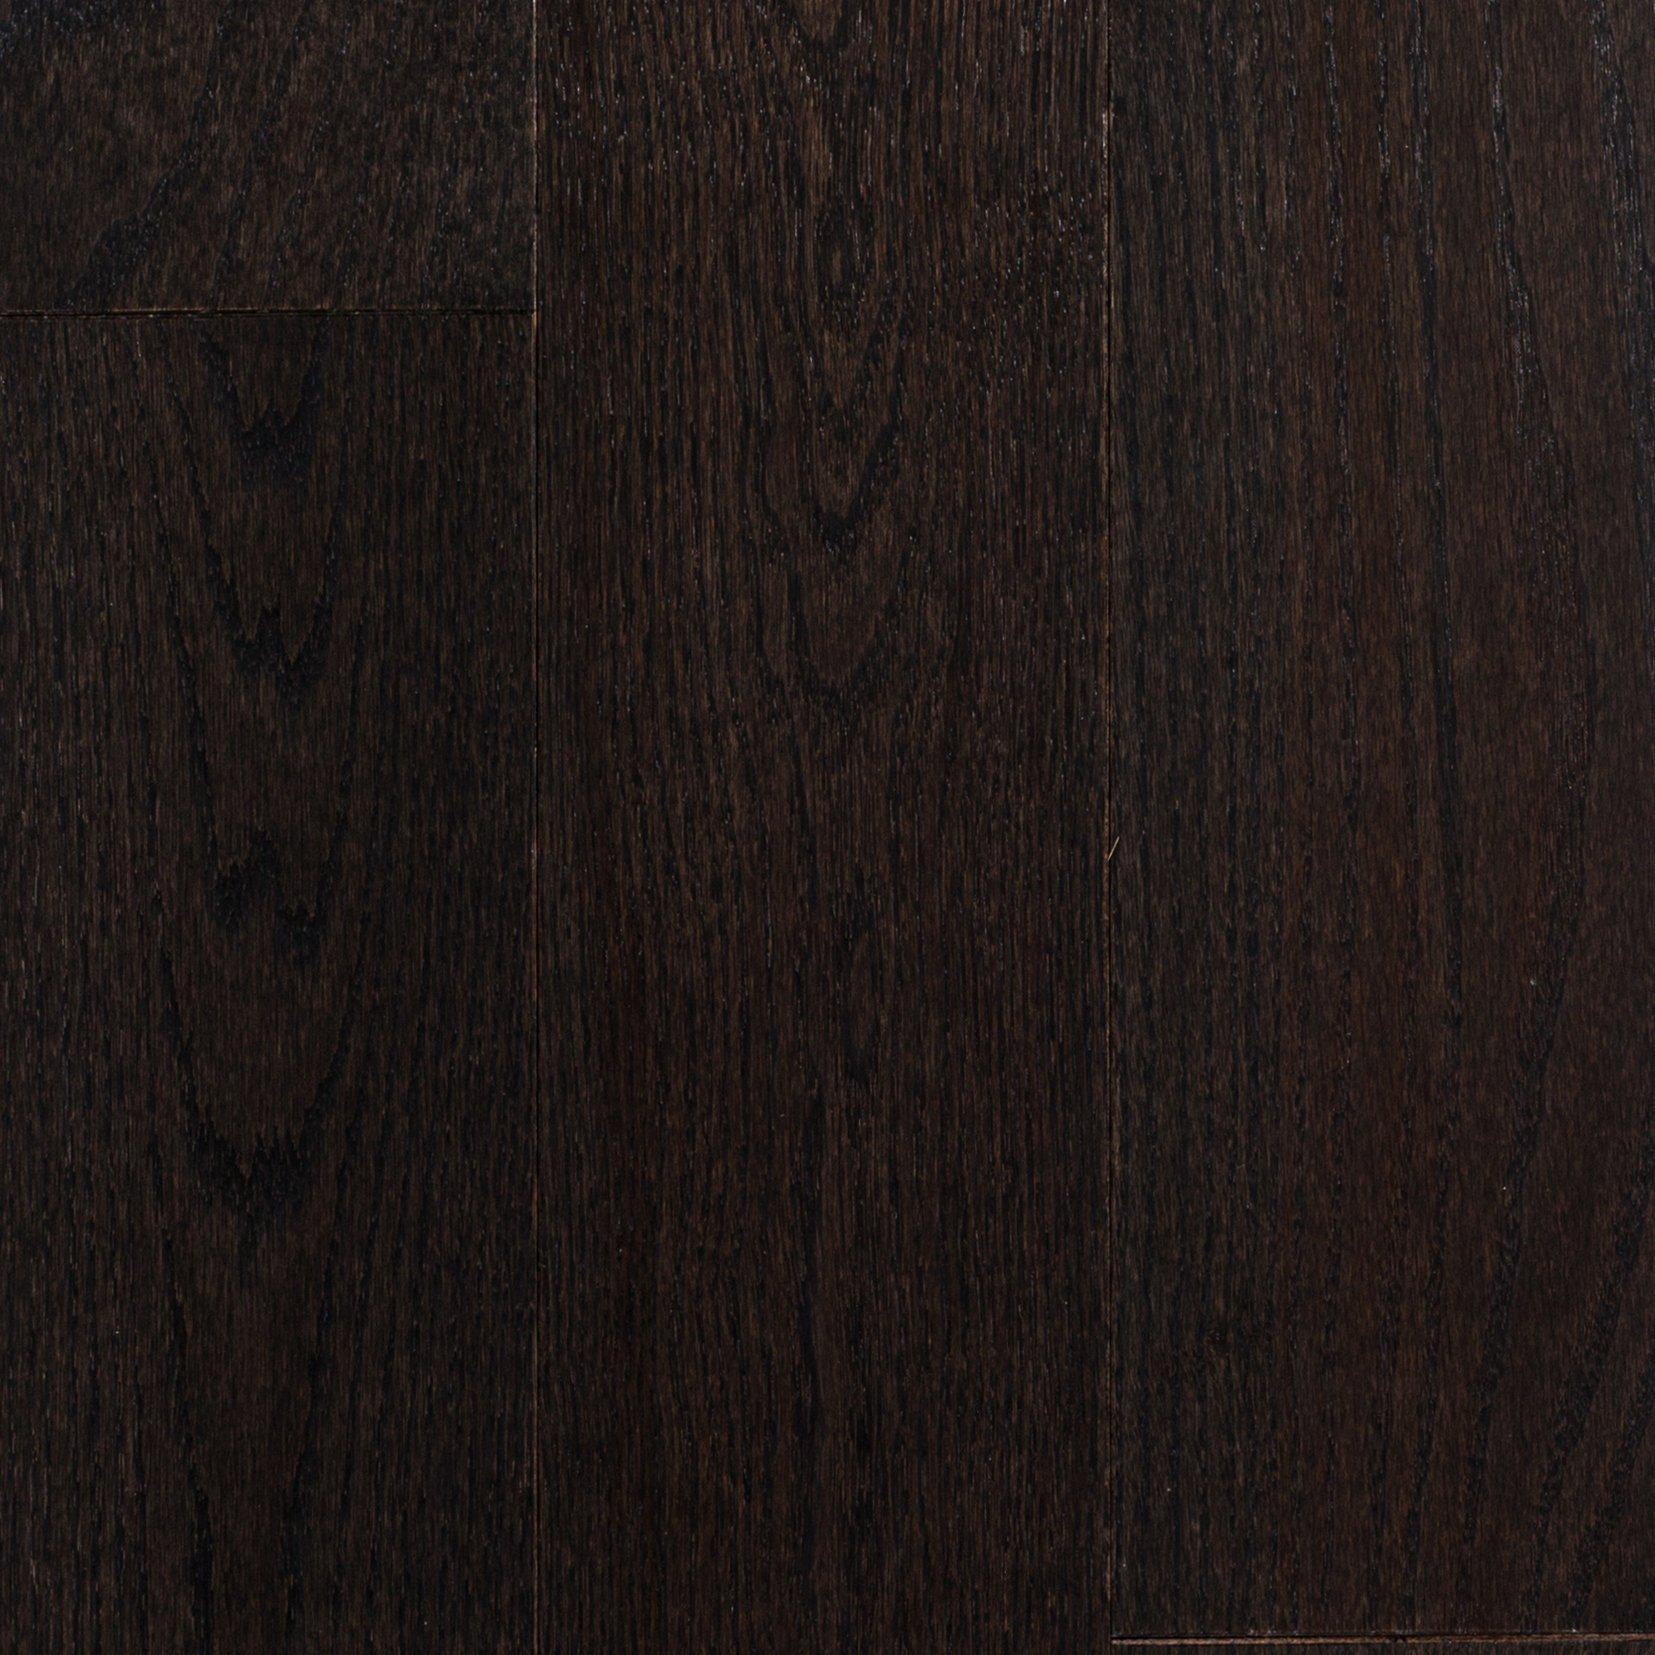 Hudson Oak Smooth Solid Hardwood